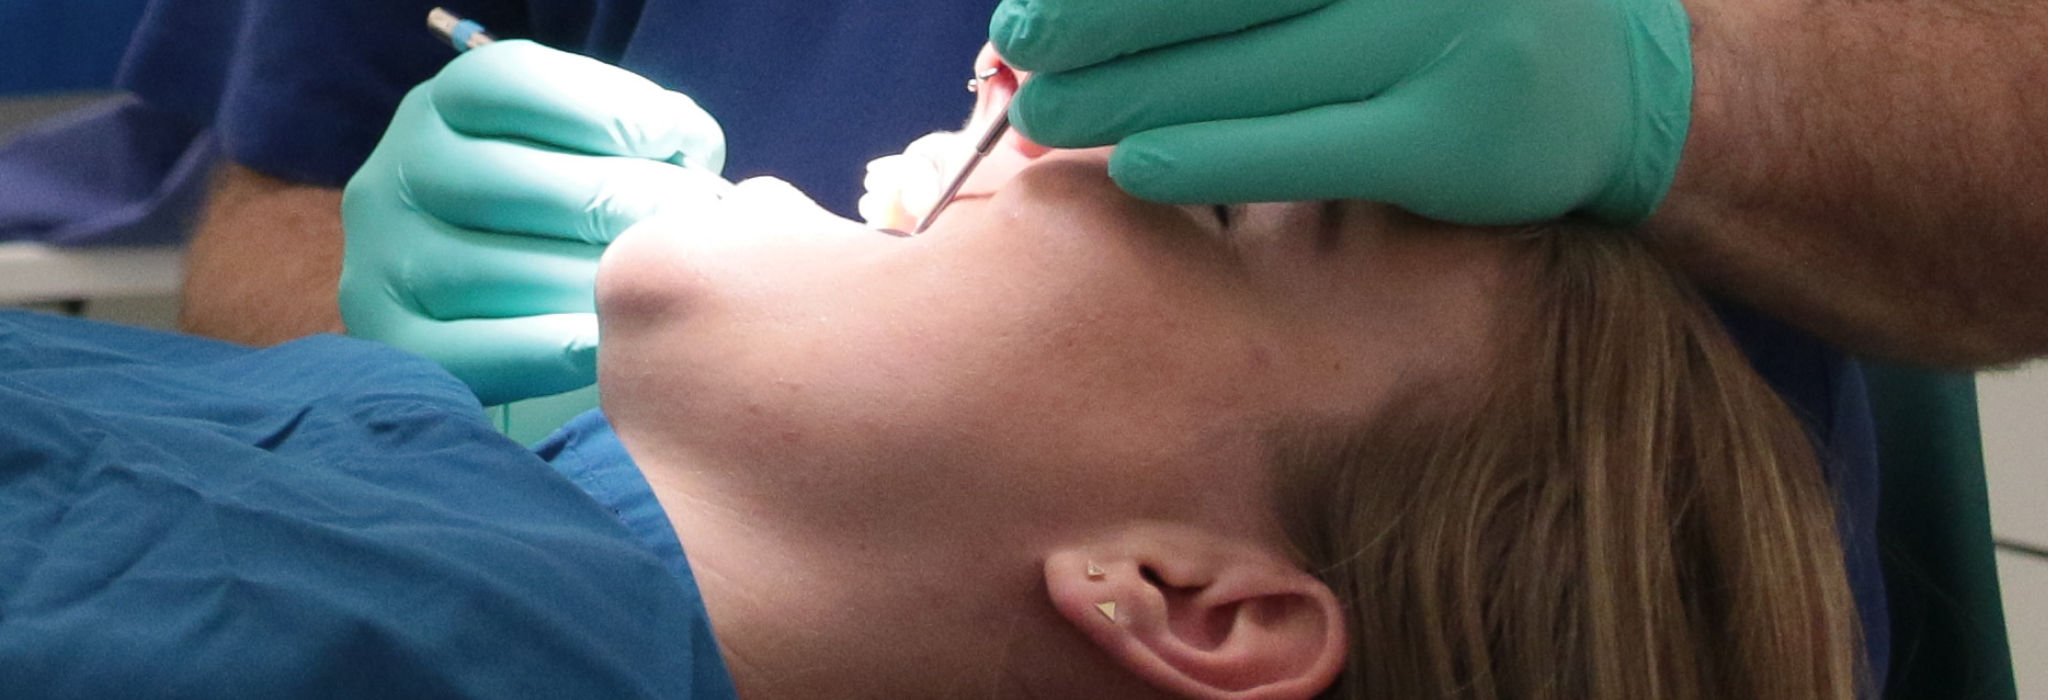 Parodontalchirurgie